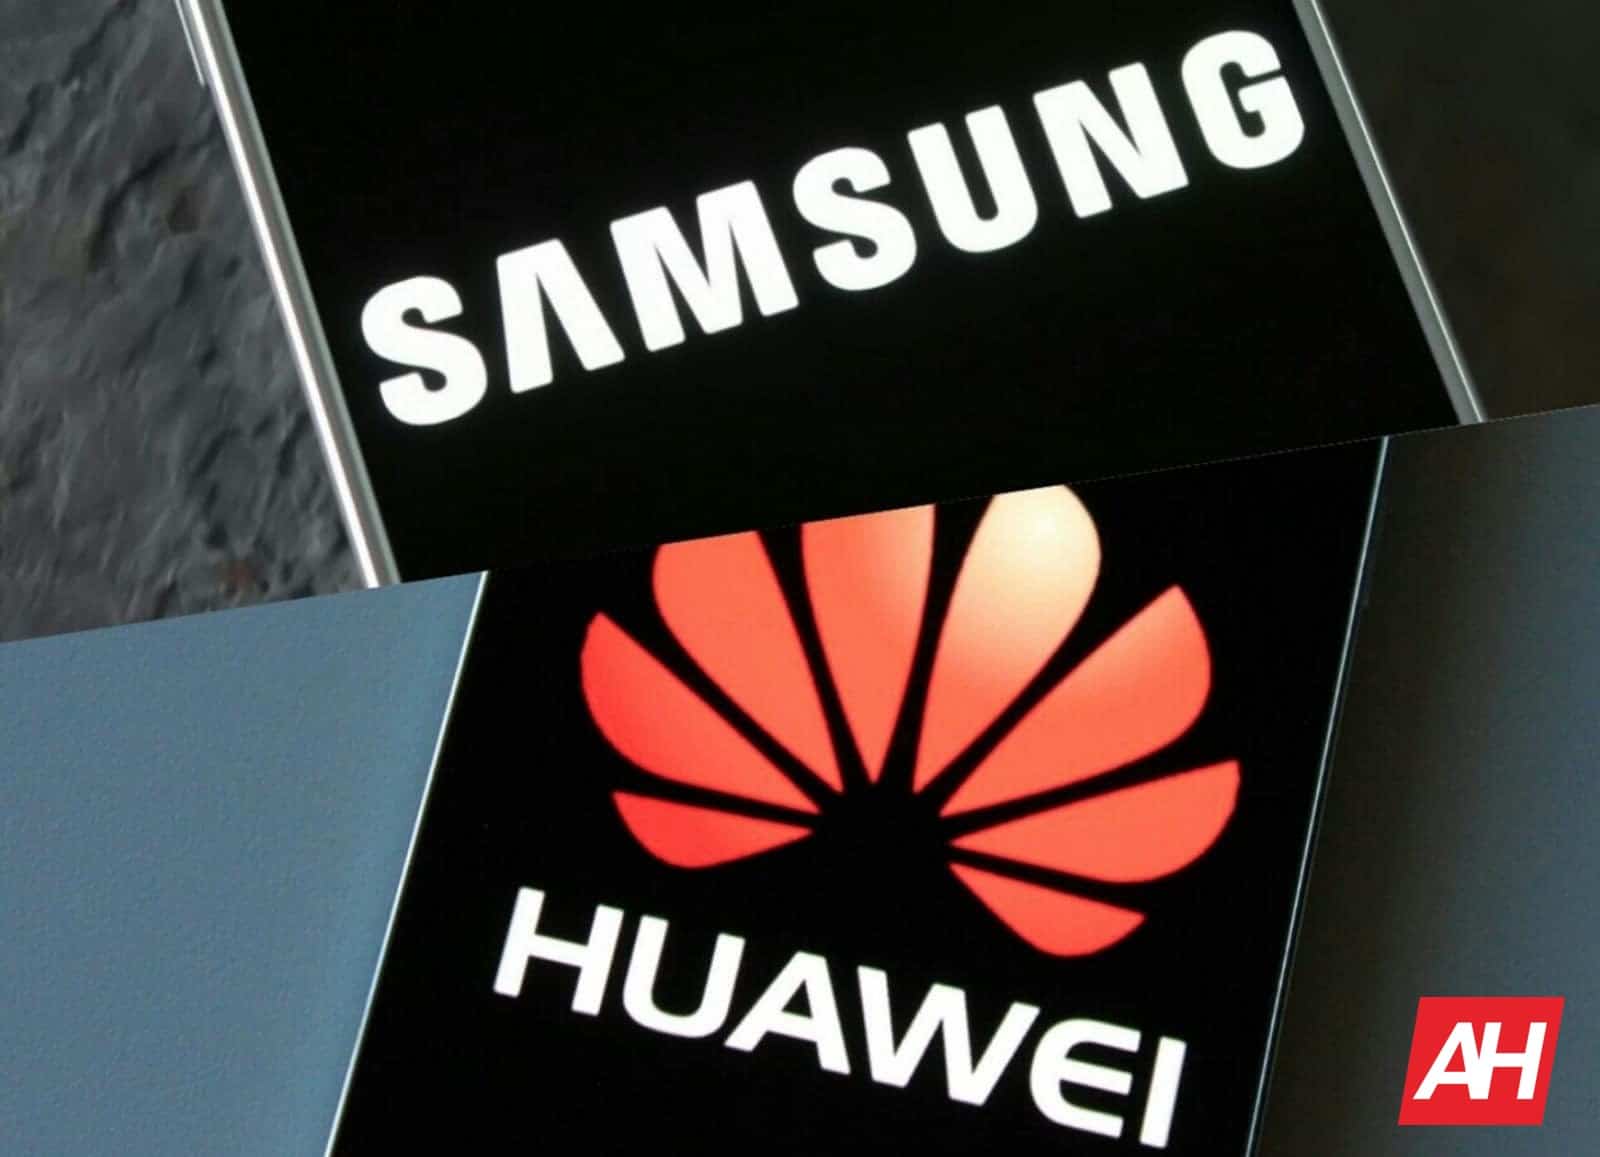 El jefe de Huawei menosprecia a Samsung y dice que si no fuera por las sanciones de EEUU, Apple y Huawei dominarían el mercado de smartphones